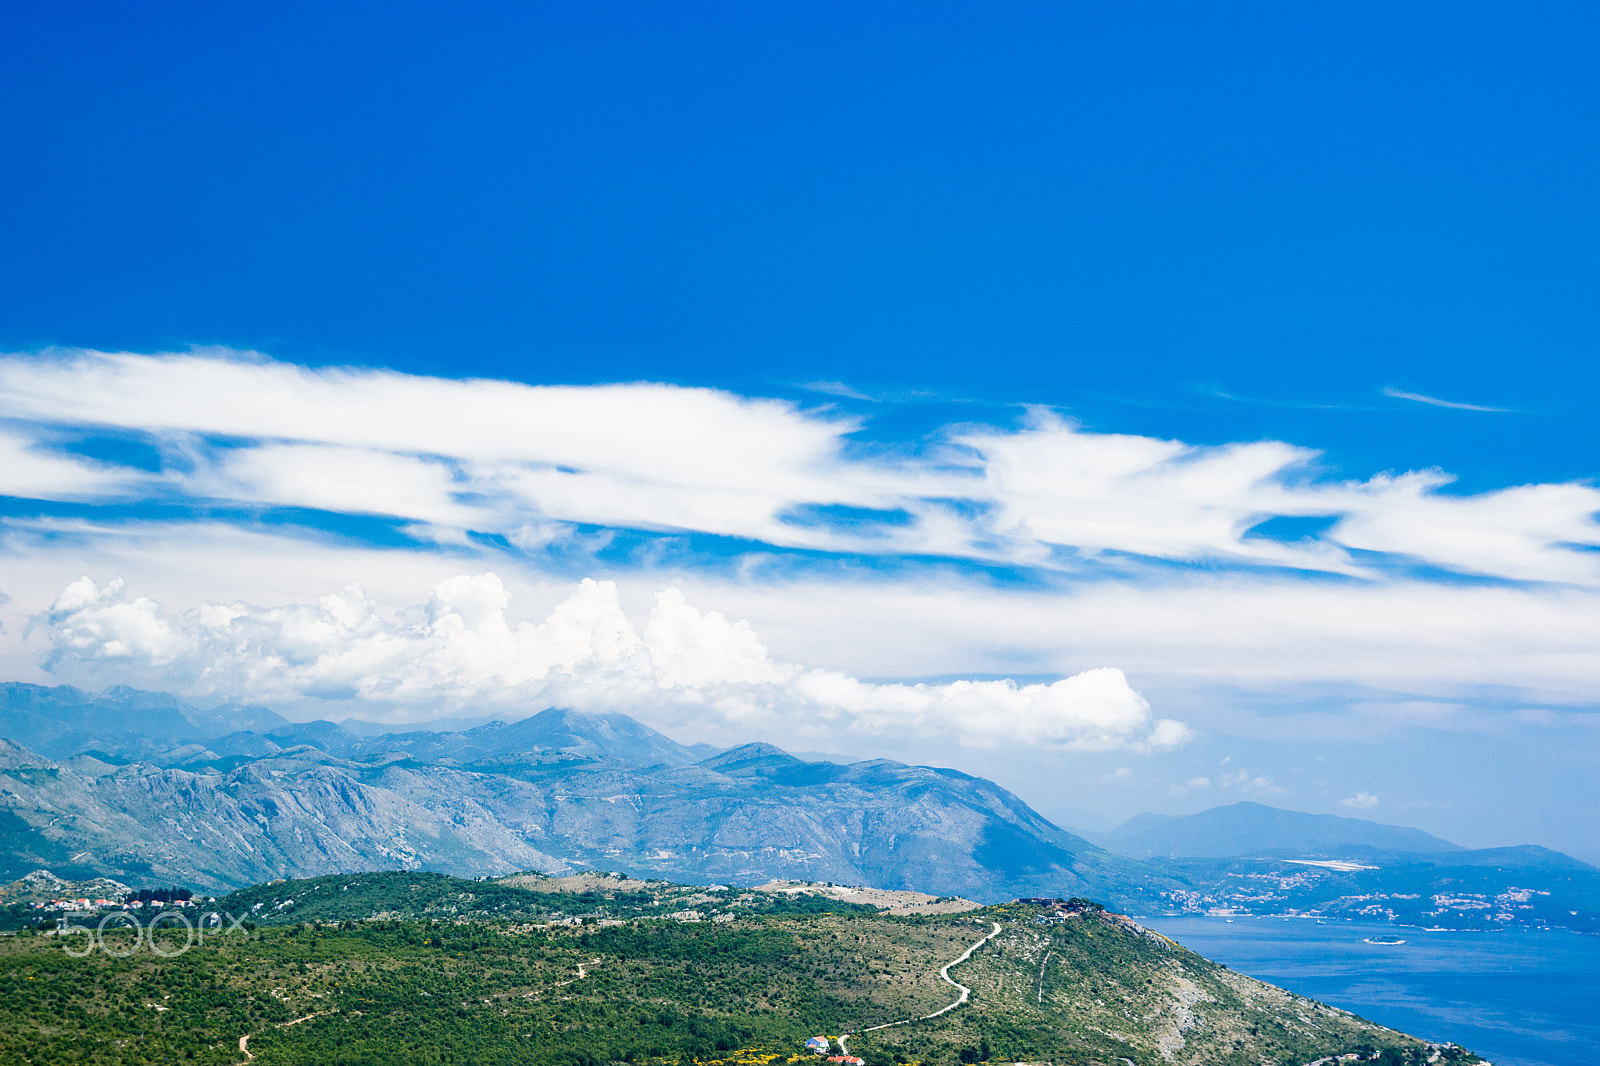 Canon EOS 600D (Rebel EOS T3i / EOS Kiss X5) sample photo. Dubornik croatia mountains view photography